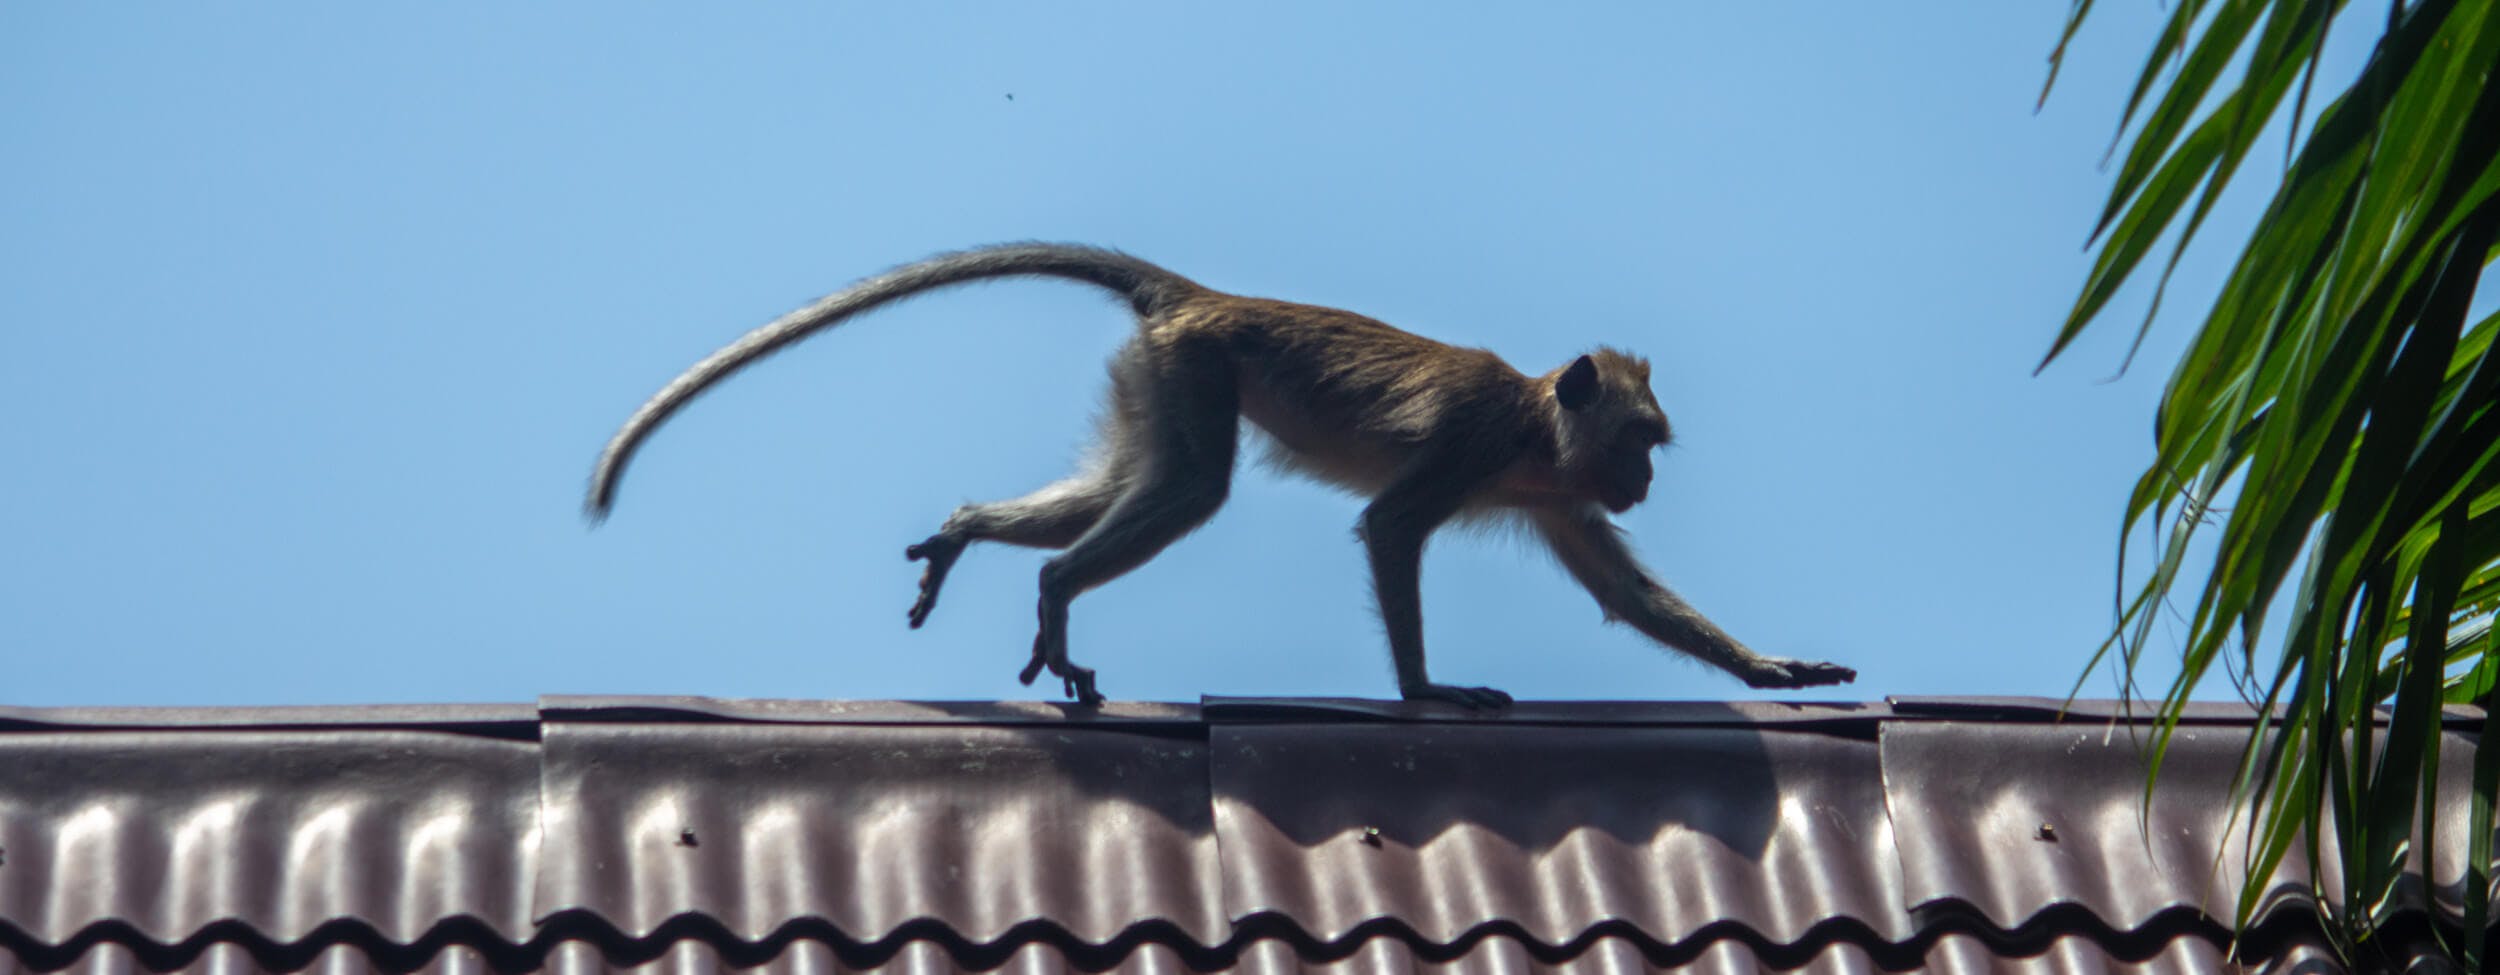 Una scimmia che sta andando da destra verso sinistra sul tetto di un Bungalow a Koh Lanta, Tailandia